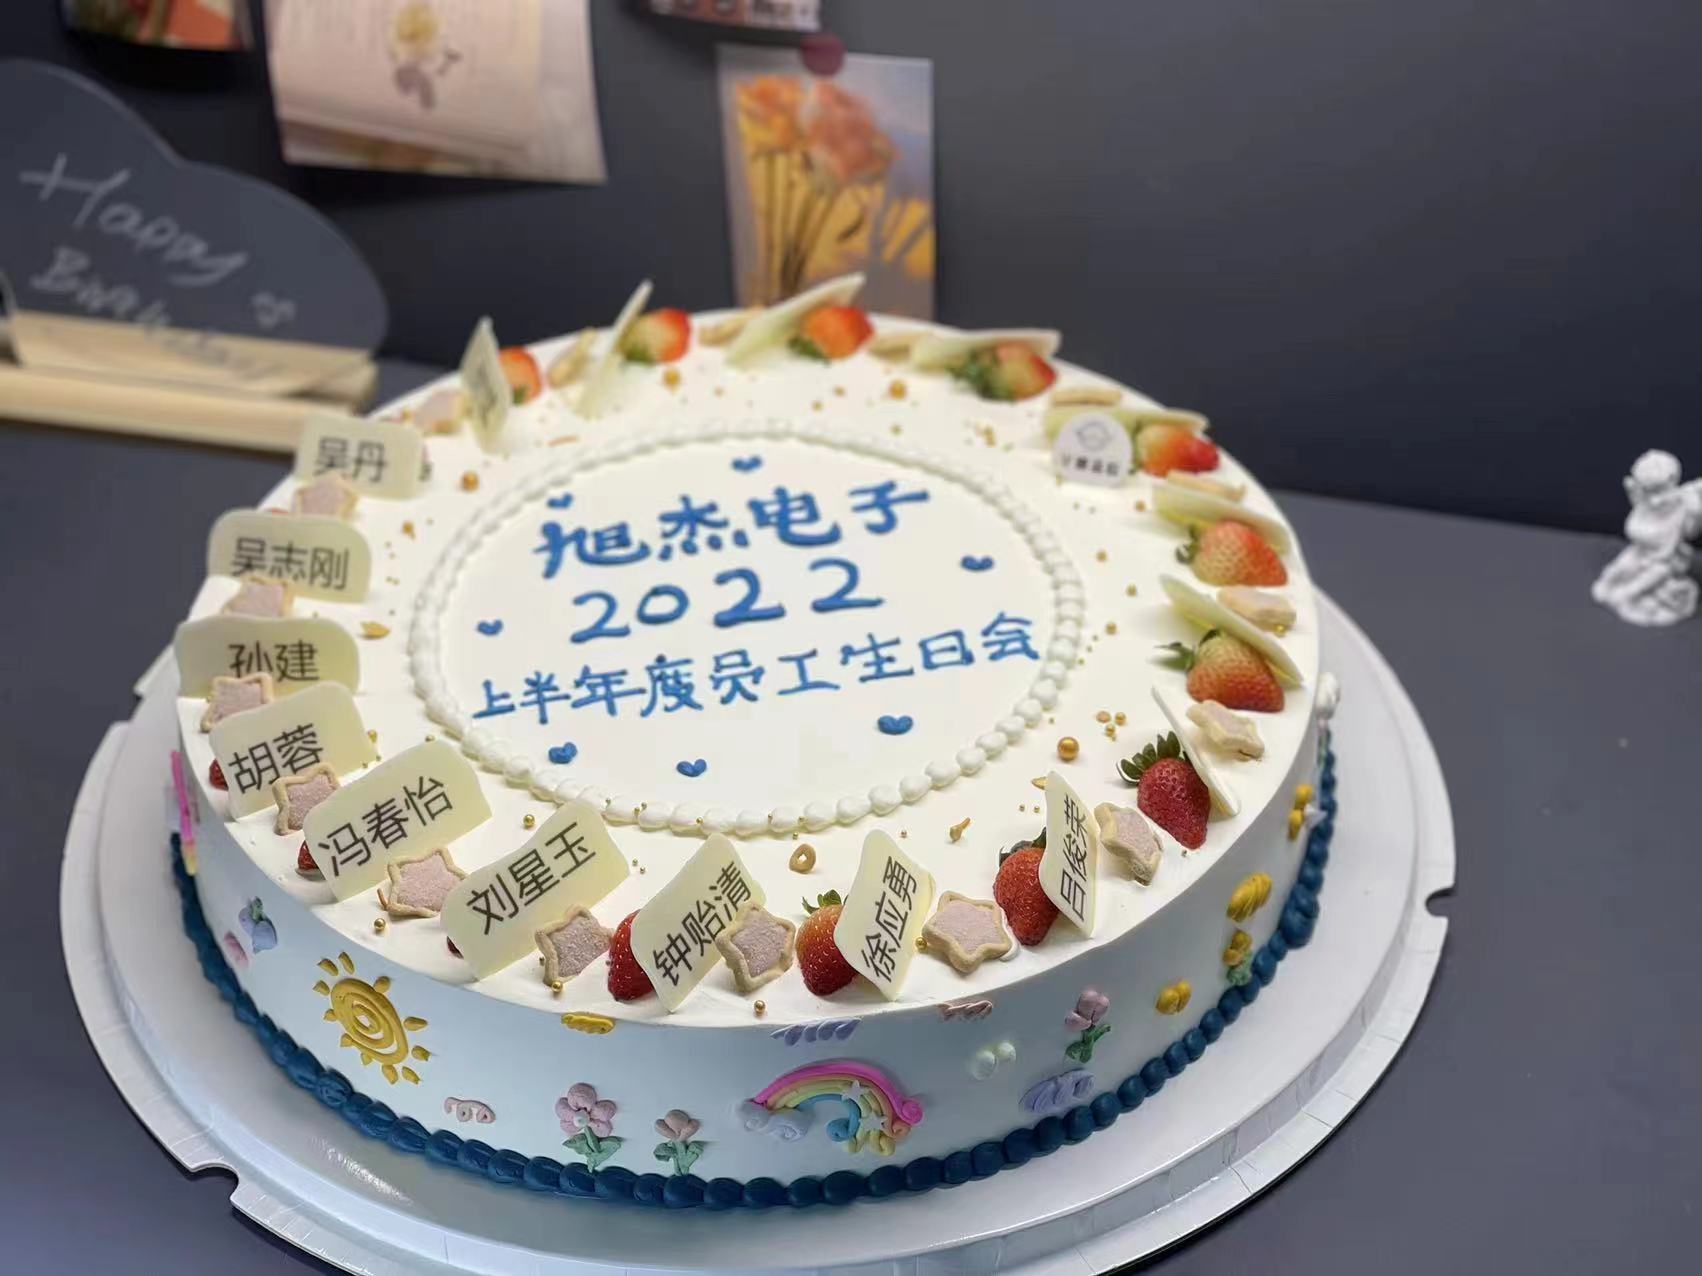 旭杰2022上半年度员工生日庆祝会